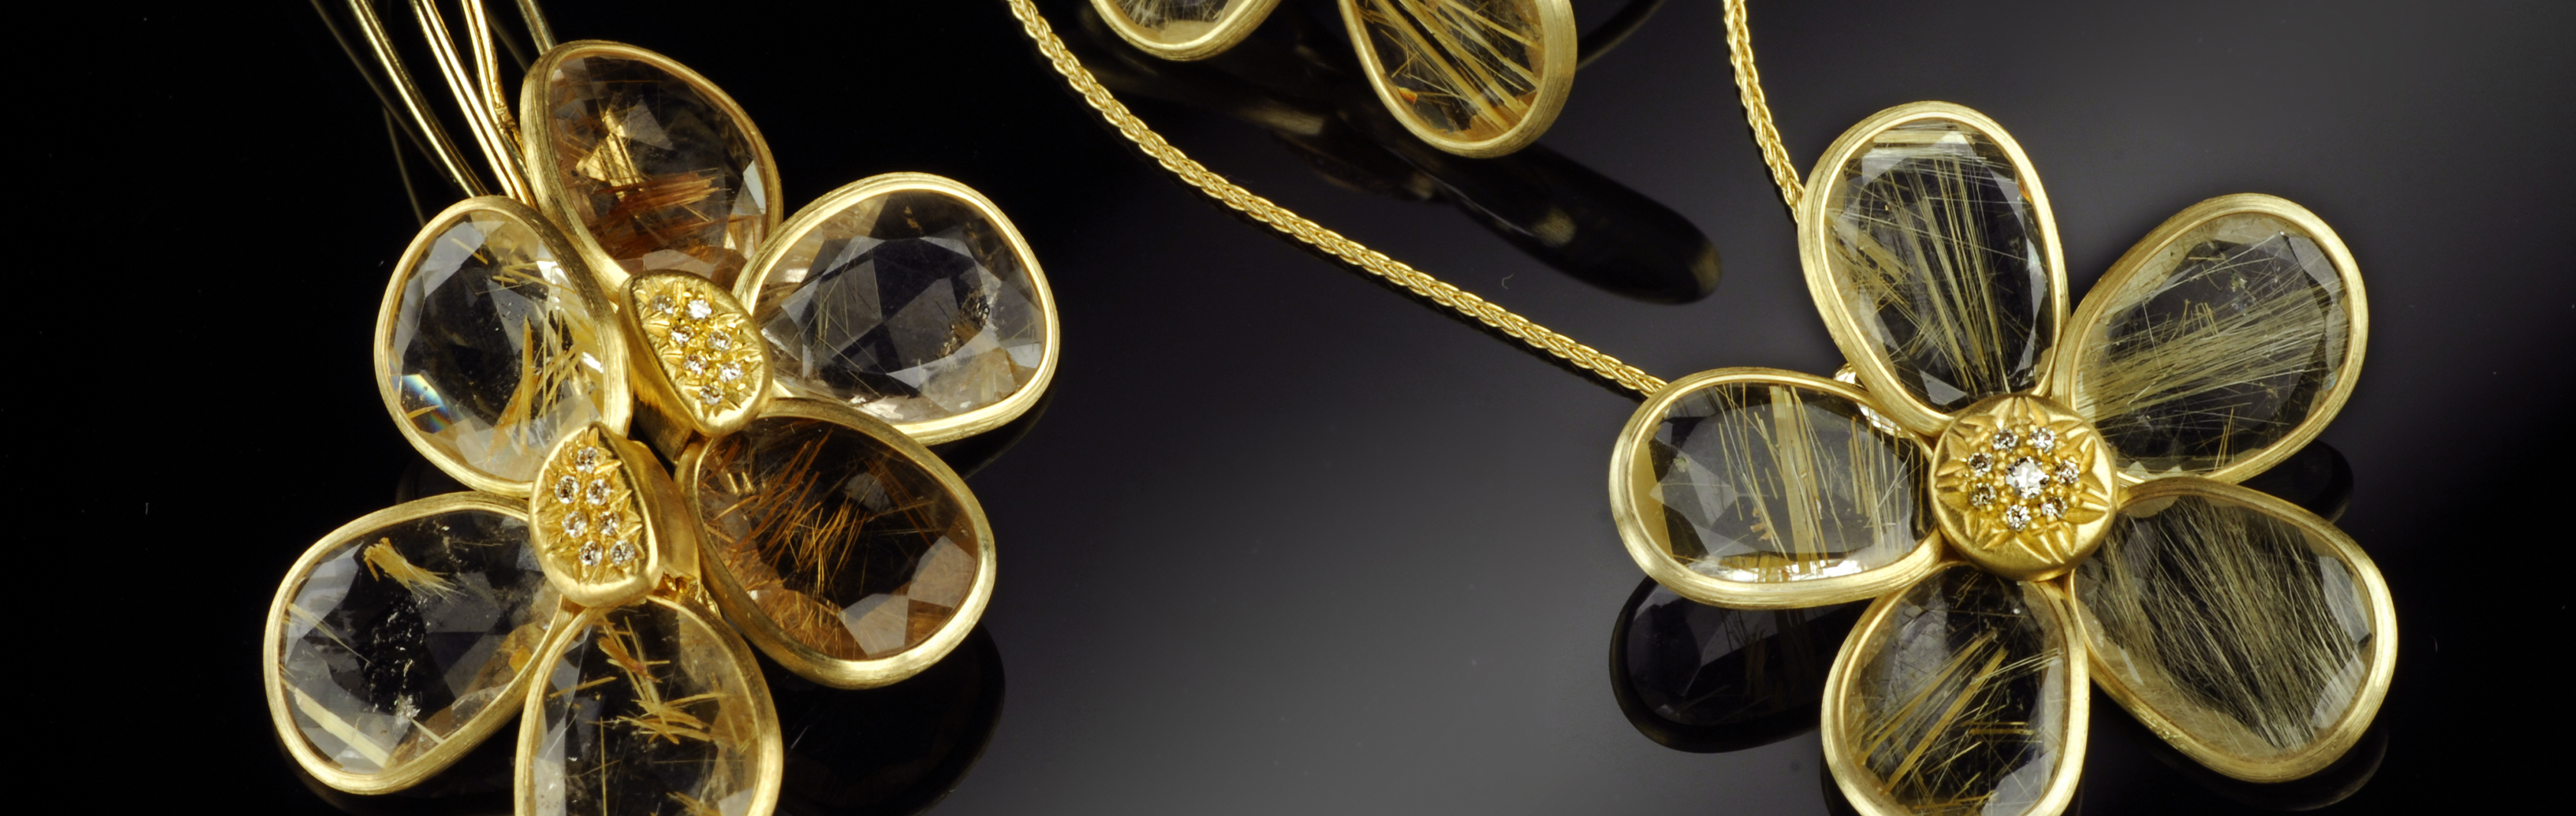 קולקציית פרח מוזהב - תכשיטי זהב 14 קראט ואבני רוטיל קוורץ ויהלום